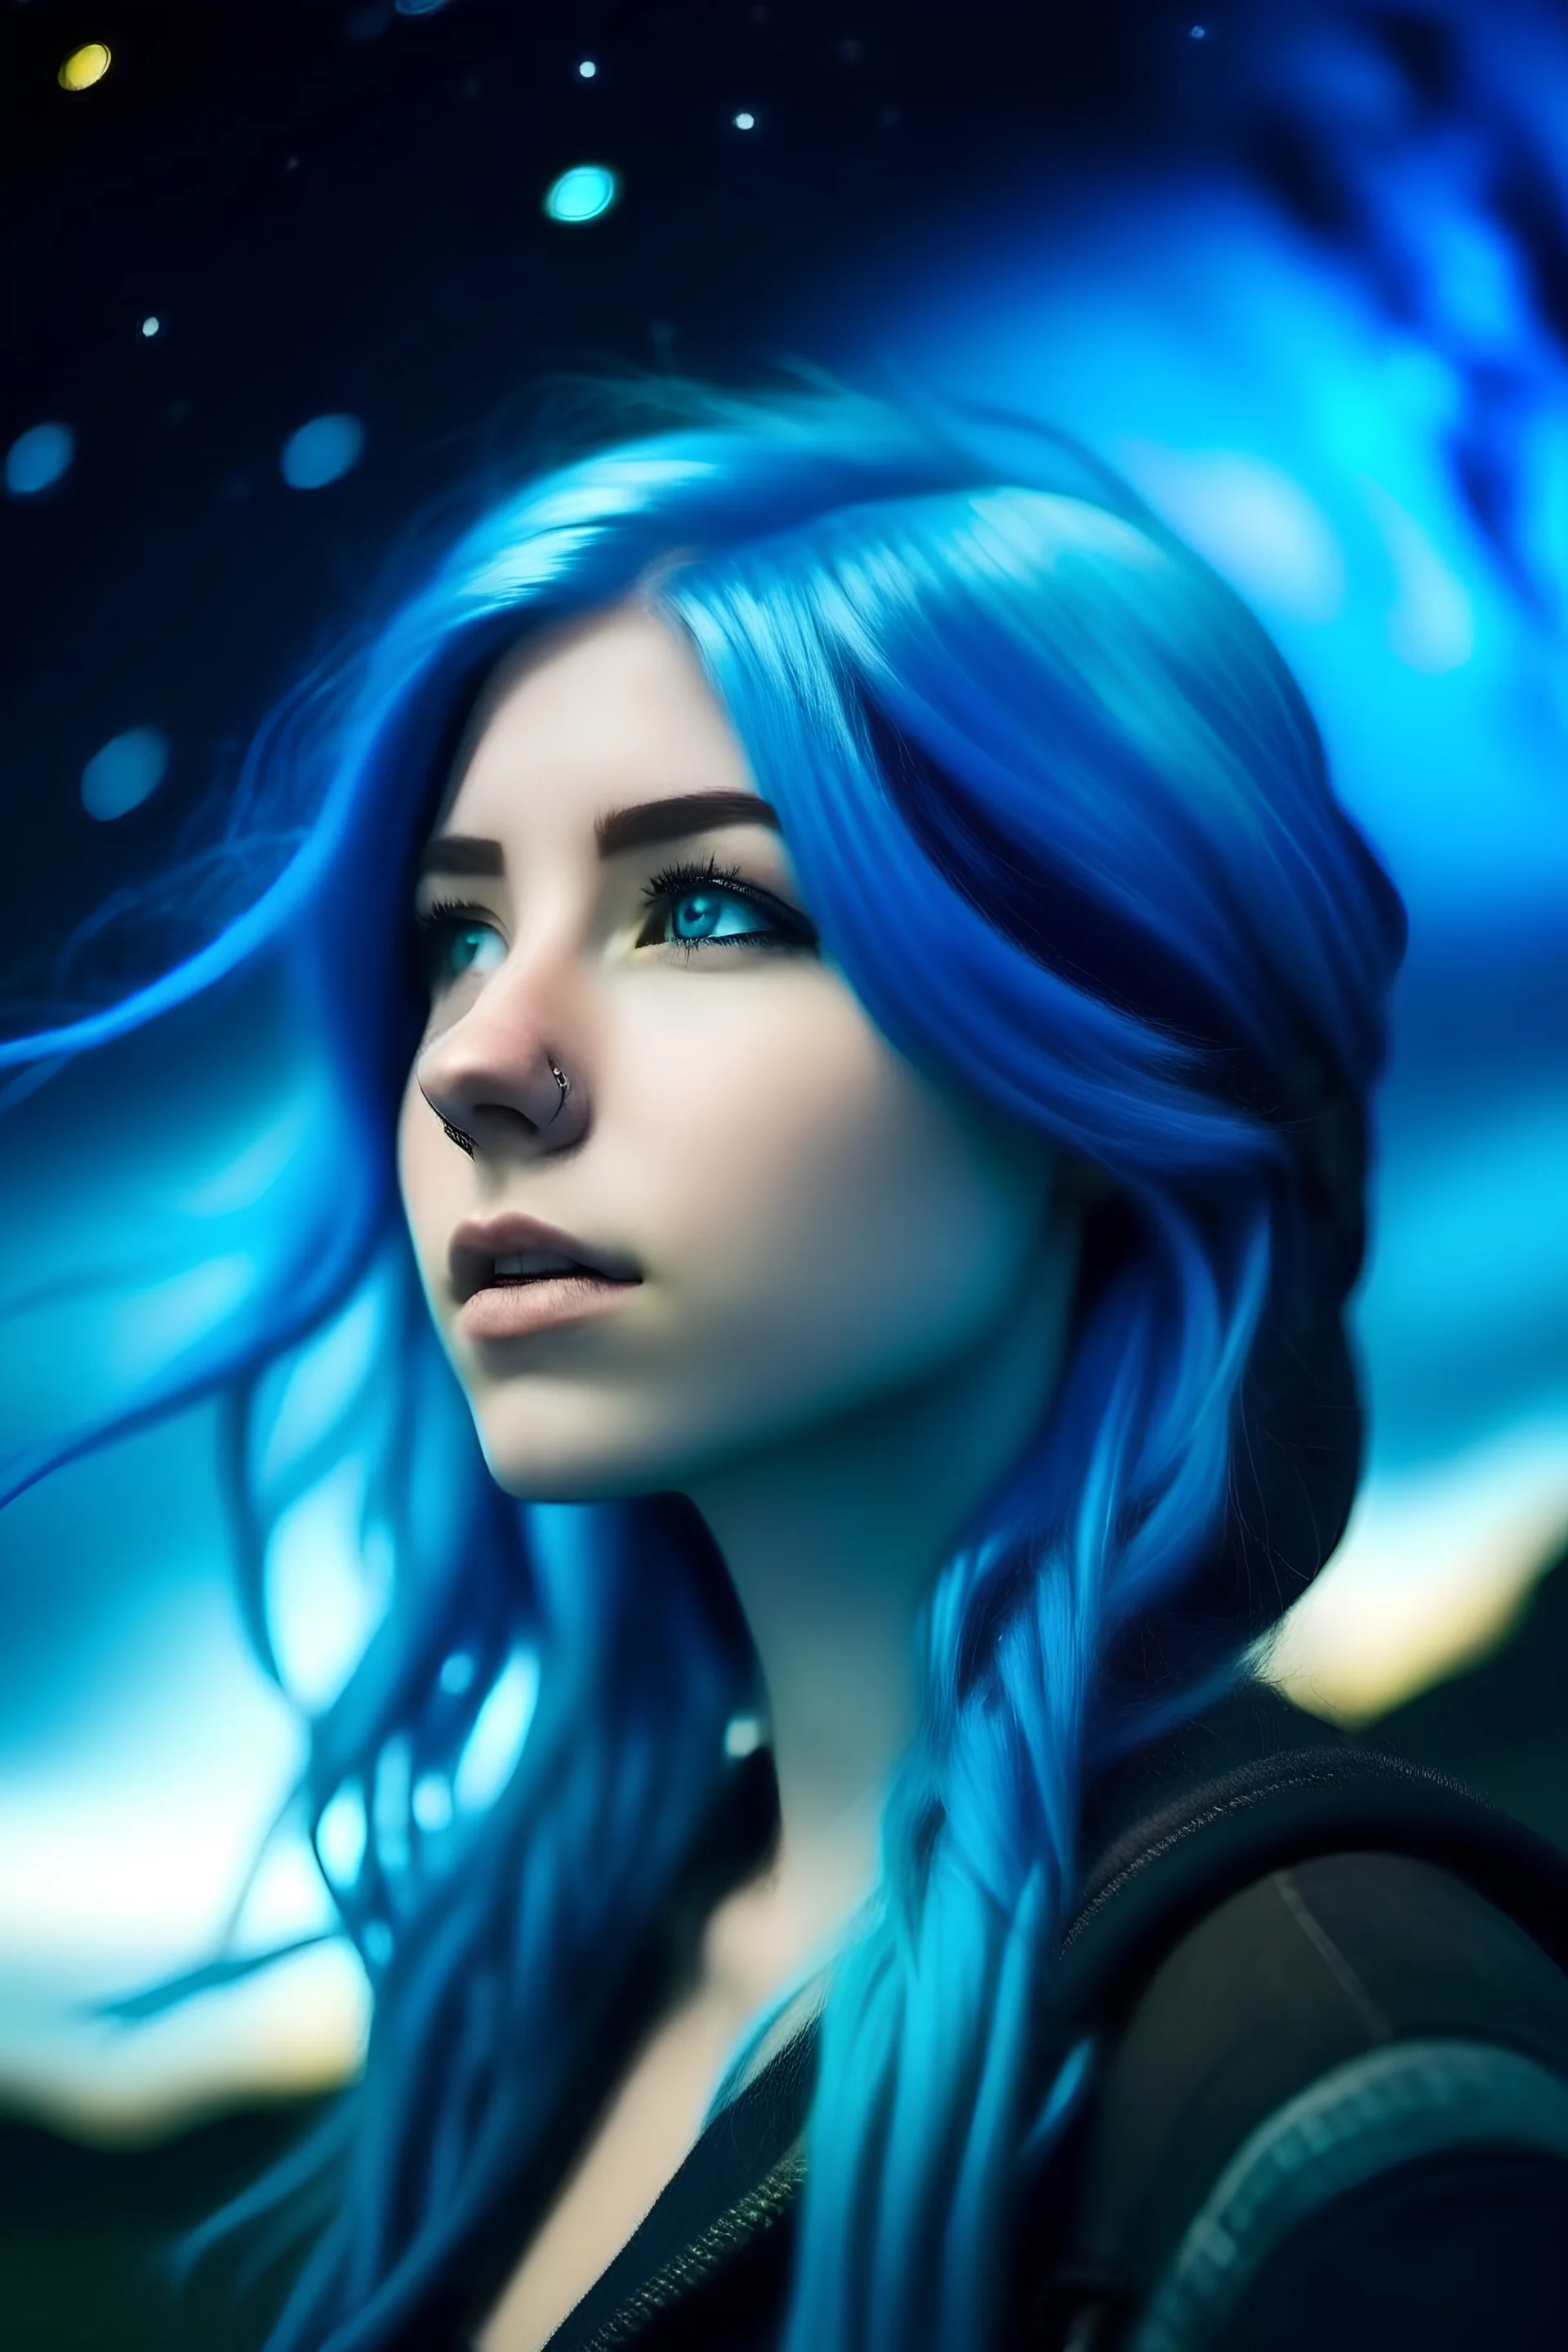 Beautiful woman blue hair viking cosmic galactic stary sky behind aurora borealis